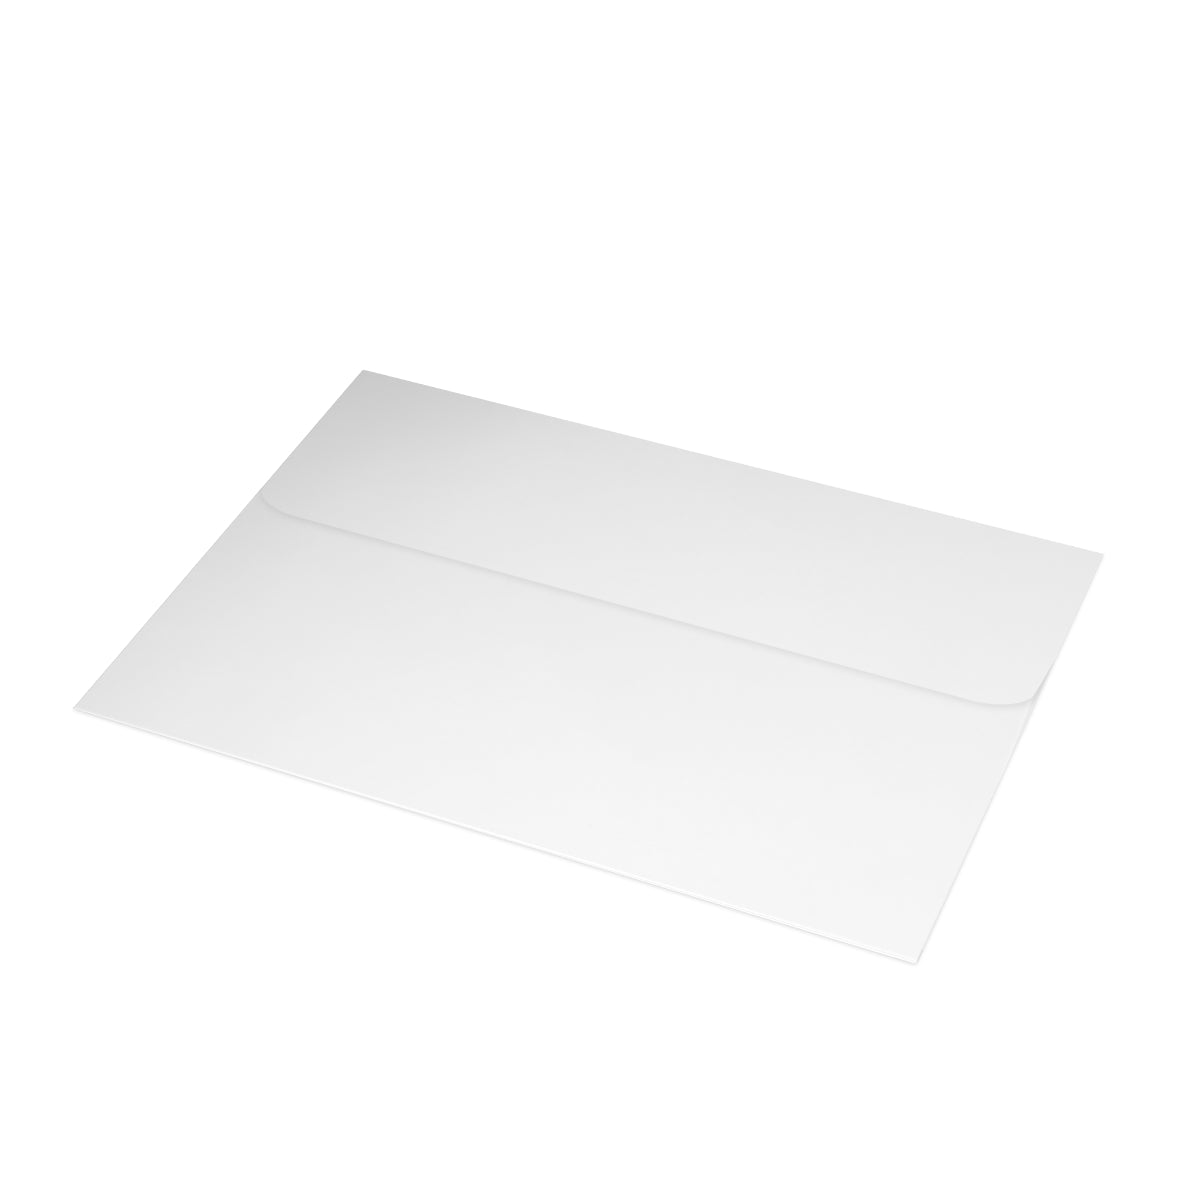 Cartes de notes mates pliées Key West + enveloppes (10 pièces)